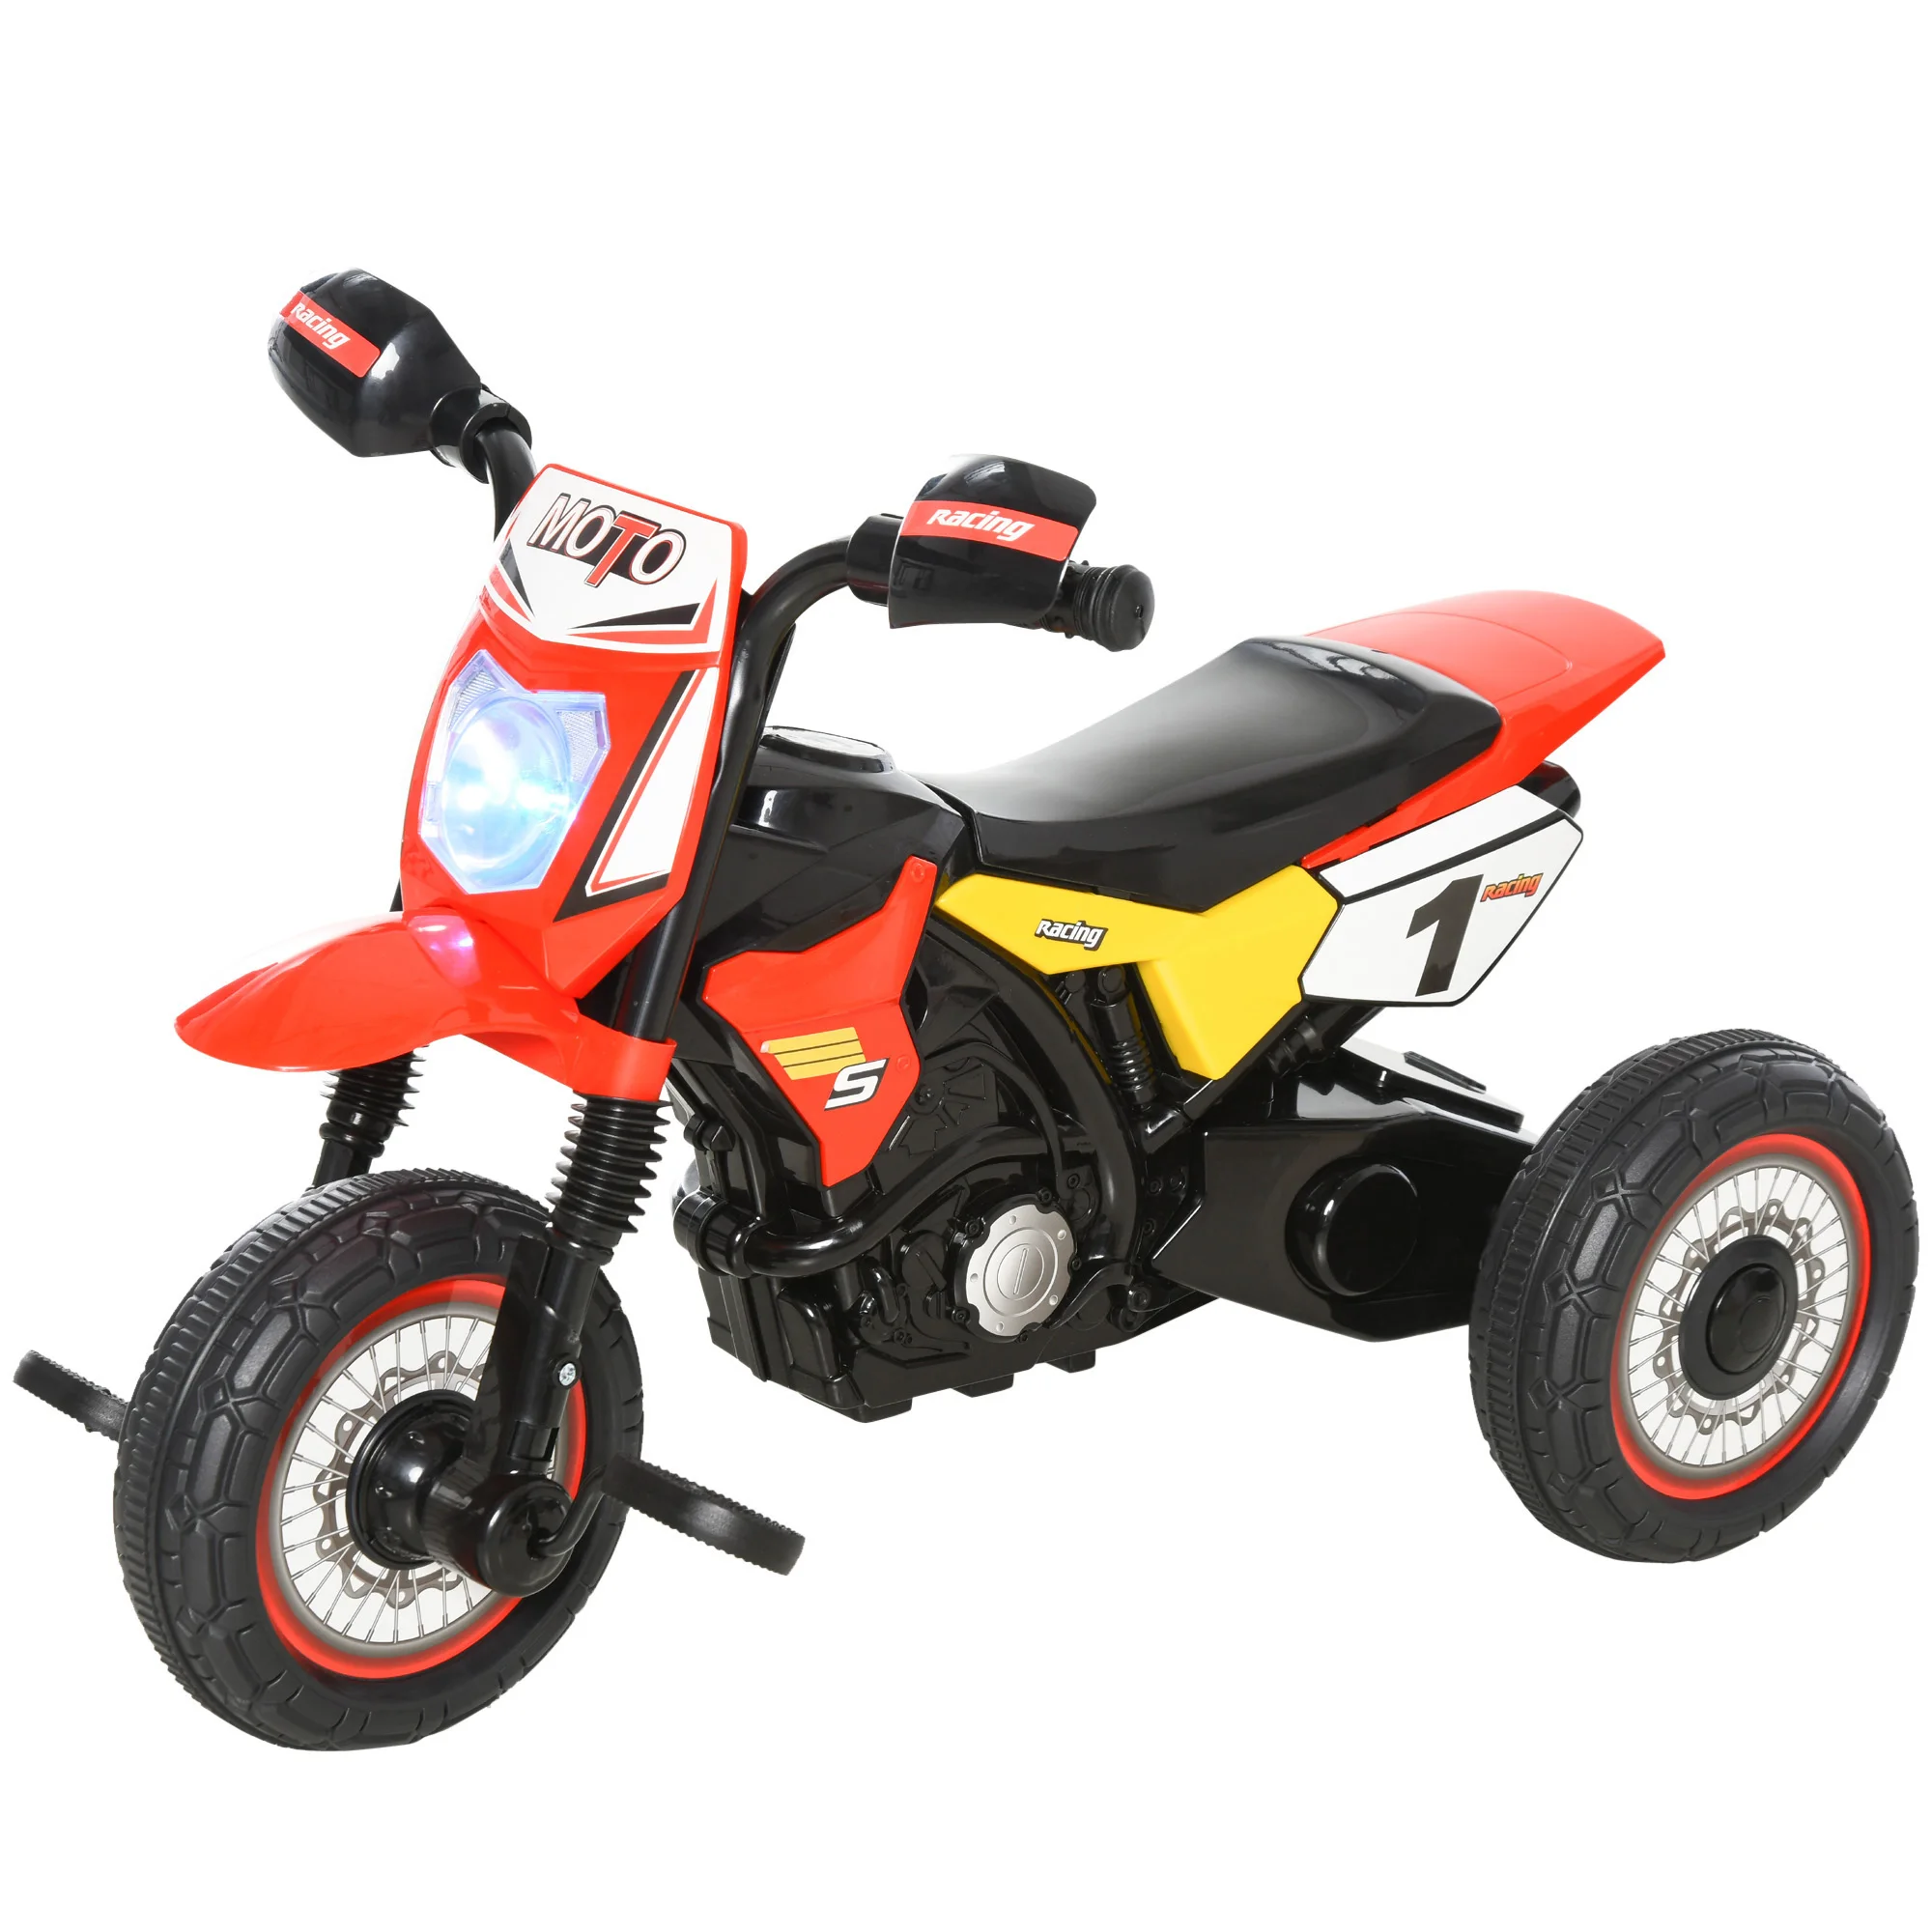 HOMCOM copii tricicleta masina + 18 luni cu 3 roti motocicleta aspectul cu lumini și sunet 71x40x51 cm